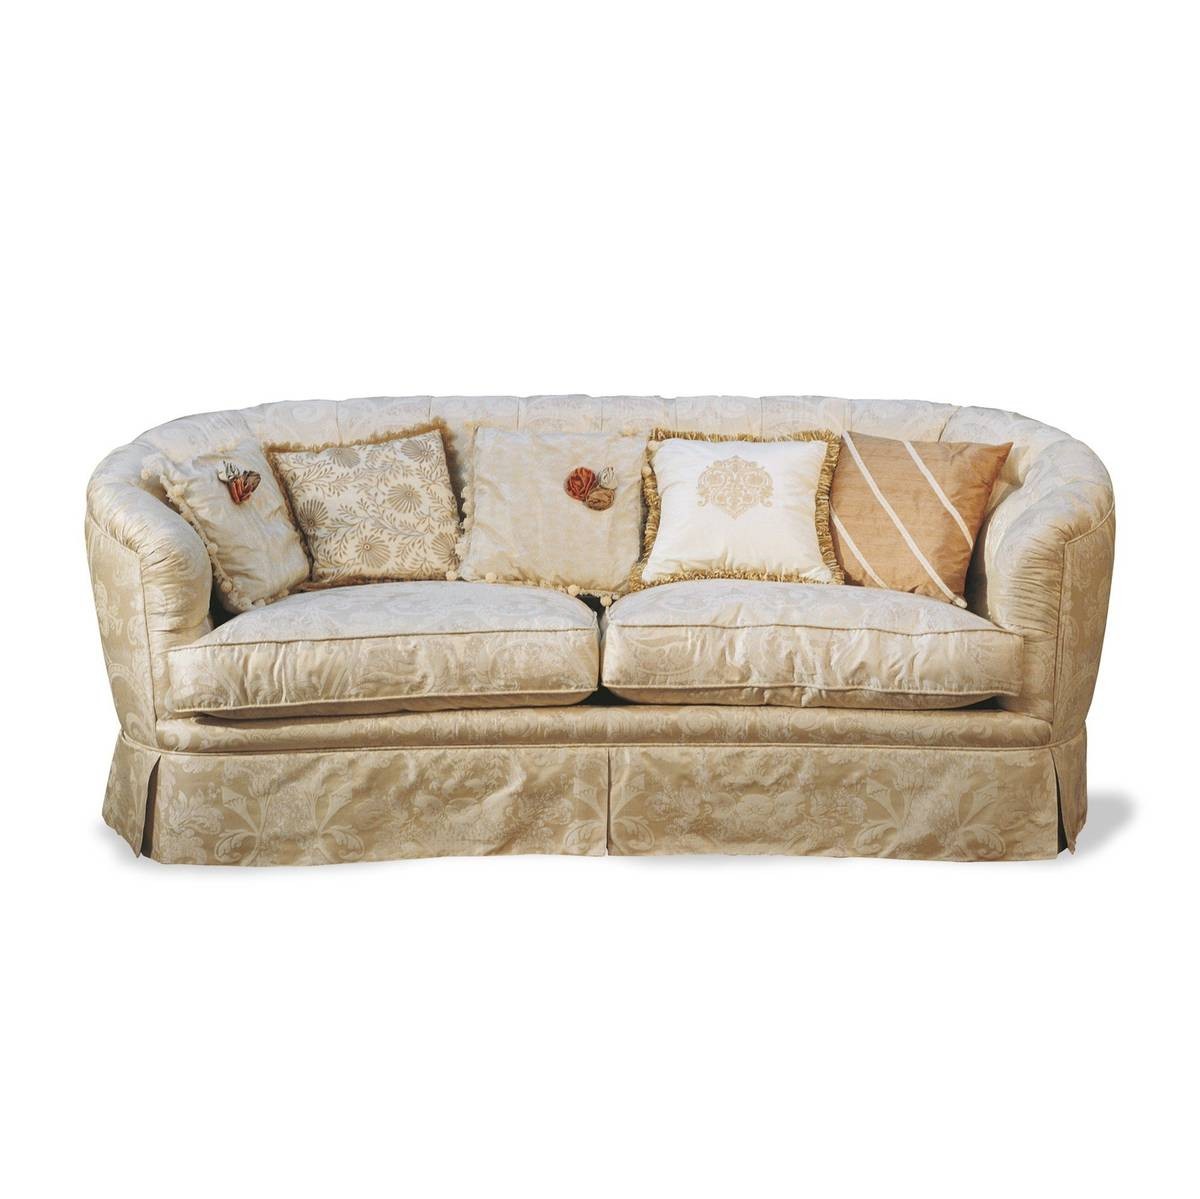 Прямой диван The Upholstery/D395 из Италии фабрики FRANCESCO MOLON